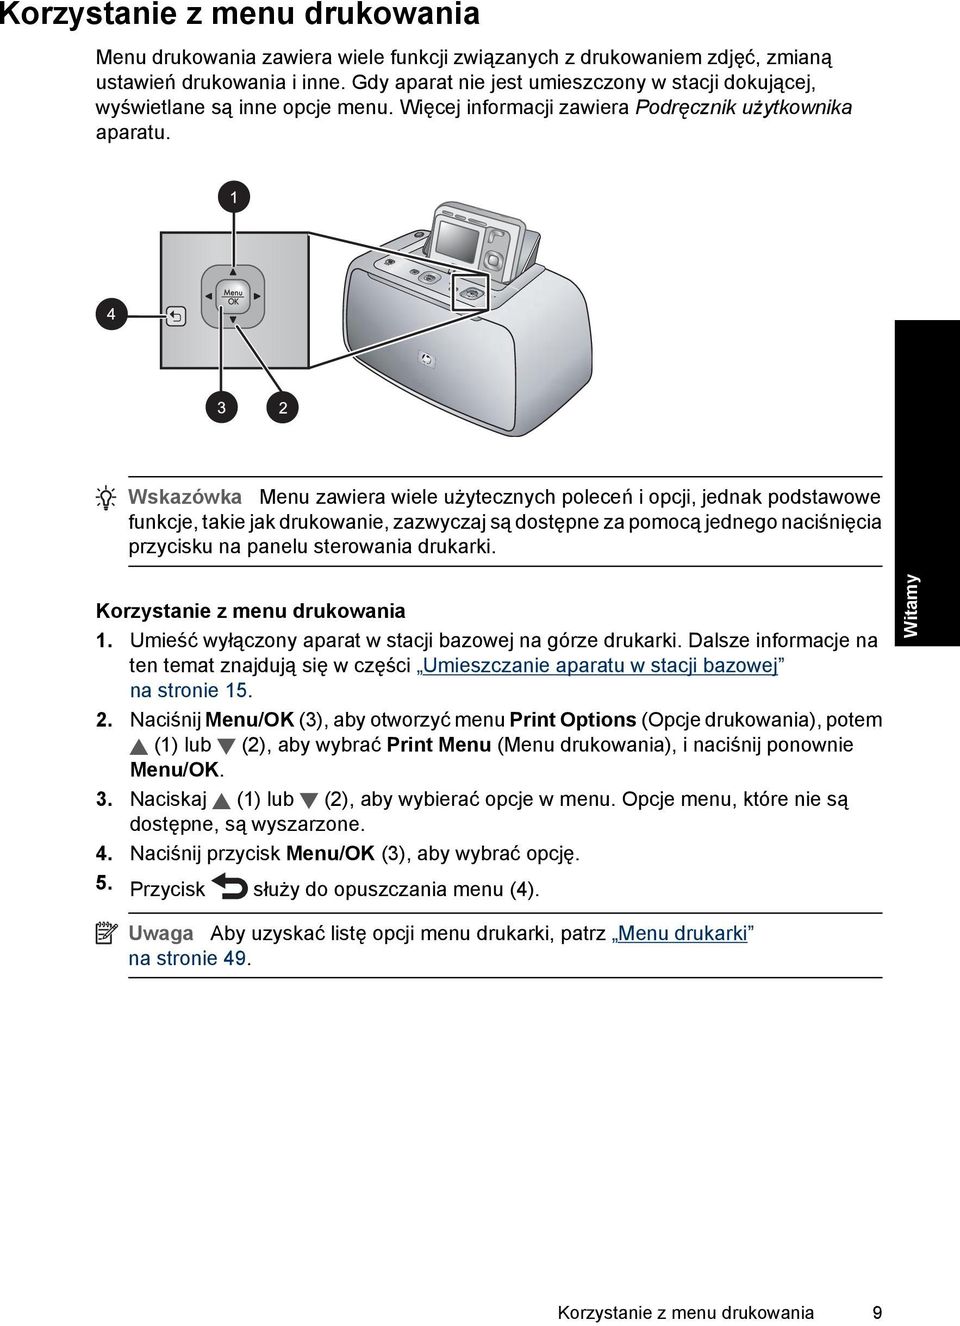 Wskazówka Menu zawiera wiele użytecznych poleceń i opcji, jednak podstawowe funkcje, takie jak drukowanie, zazwyczaj są dostępne za pomocą jednego naciśnięcia przycisku na panelu sterowania drukarki.